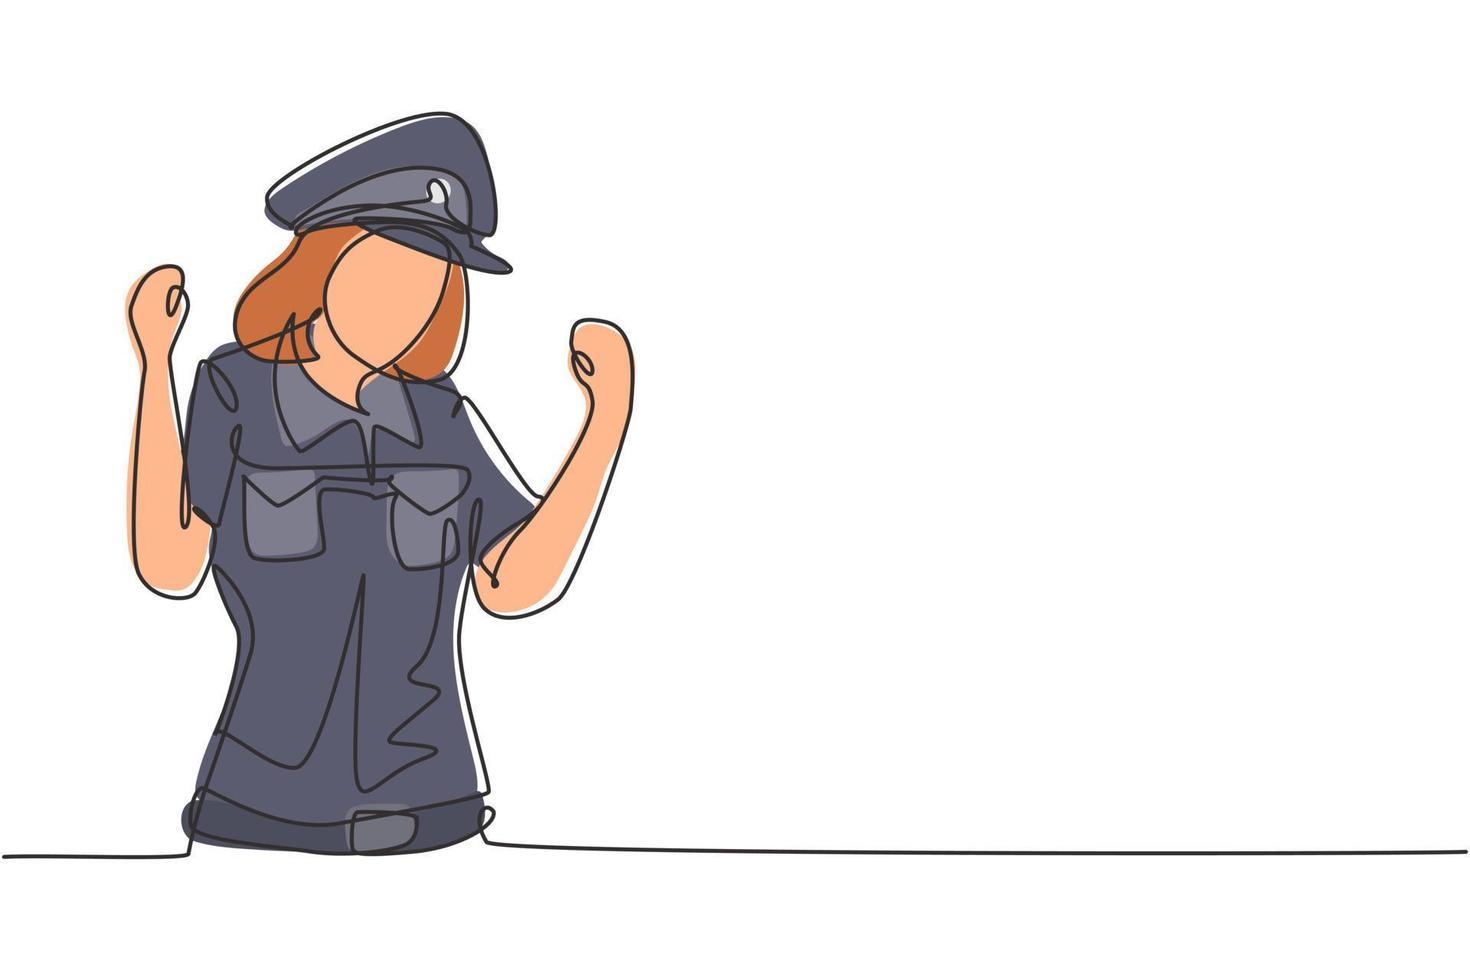 kontinuerlig en linje ritning poliskvinna med fira gest och full uniform är redo att genomdriva trafikdisciplin på motorvägen. beredskapspatrull. enkel linje rita design vektor grafisk illustration